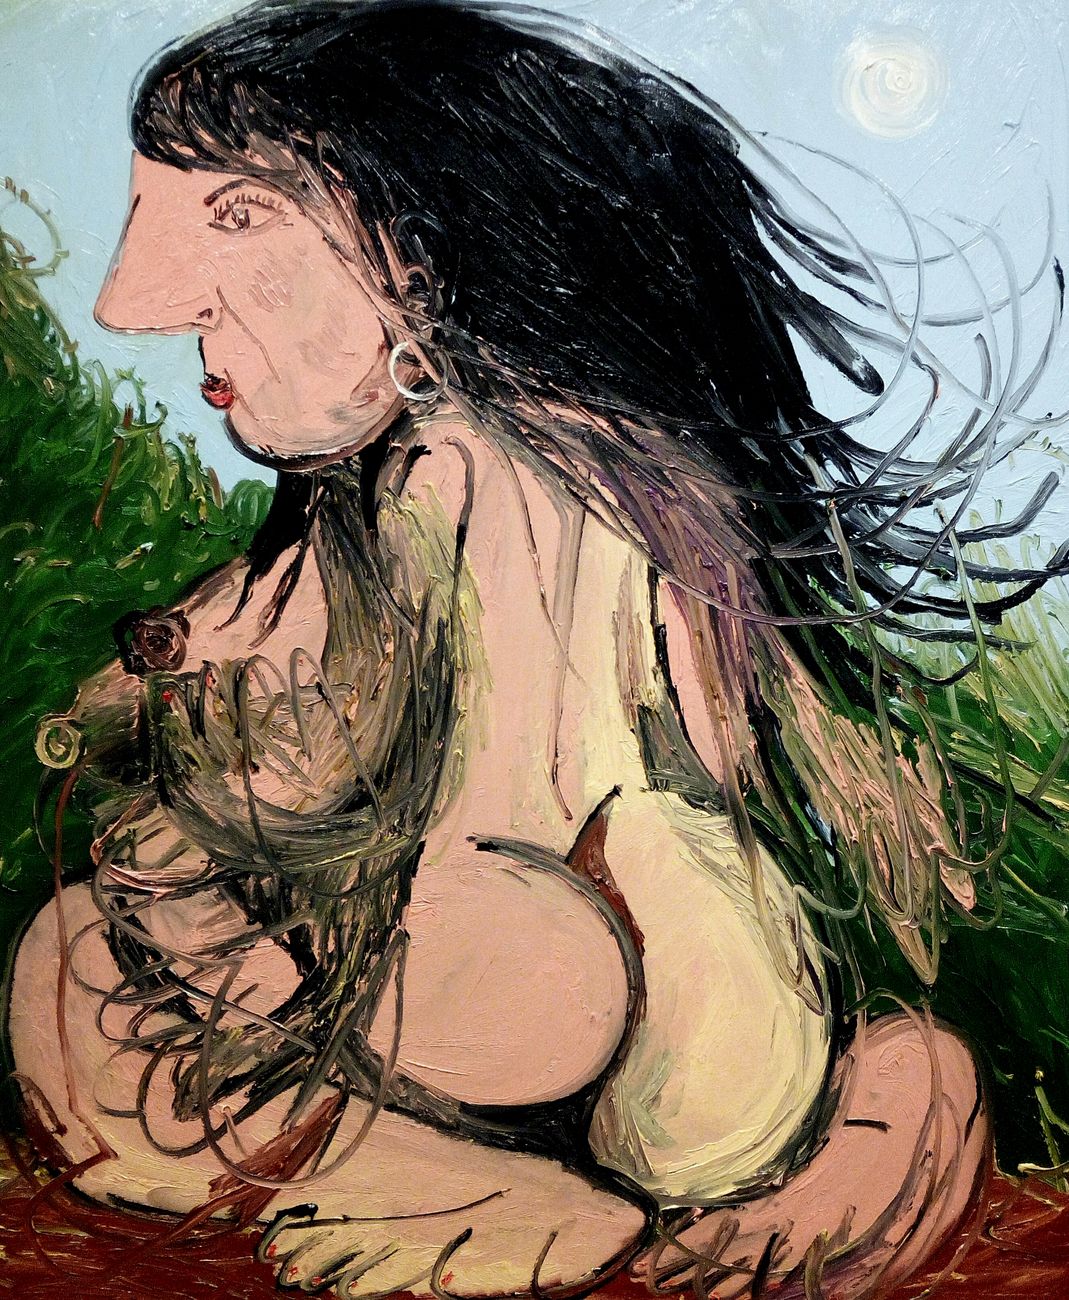 Dario Molinaro, Lucia in the wind, 2020, oil on canvas, 100 x 120 cm